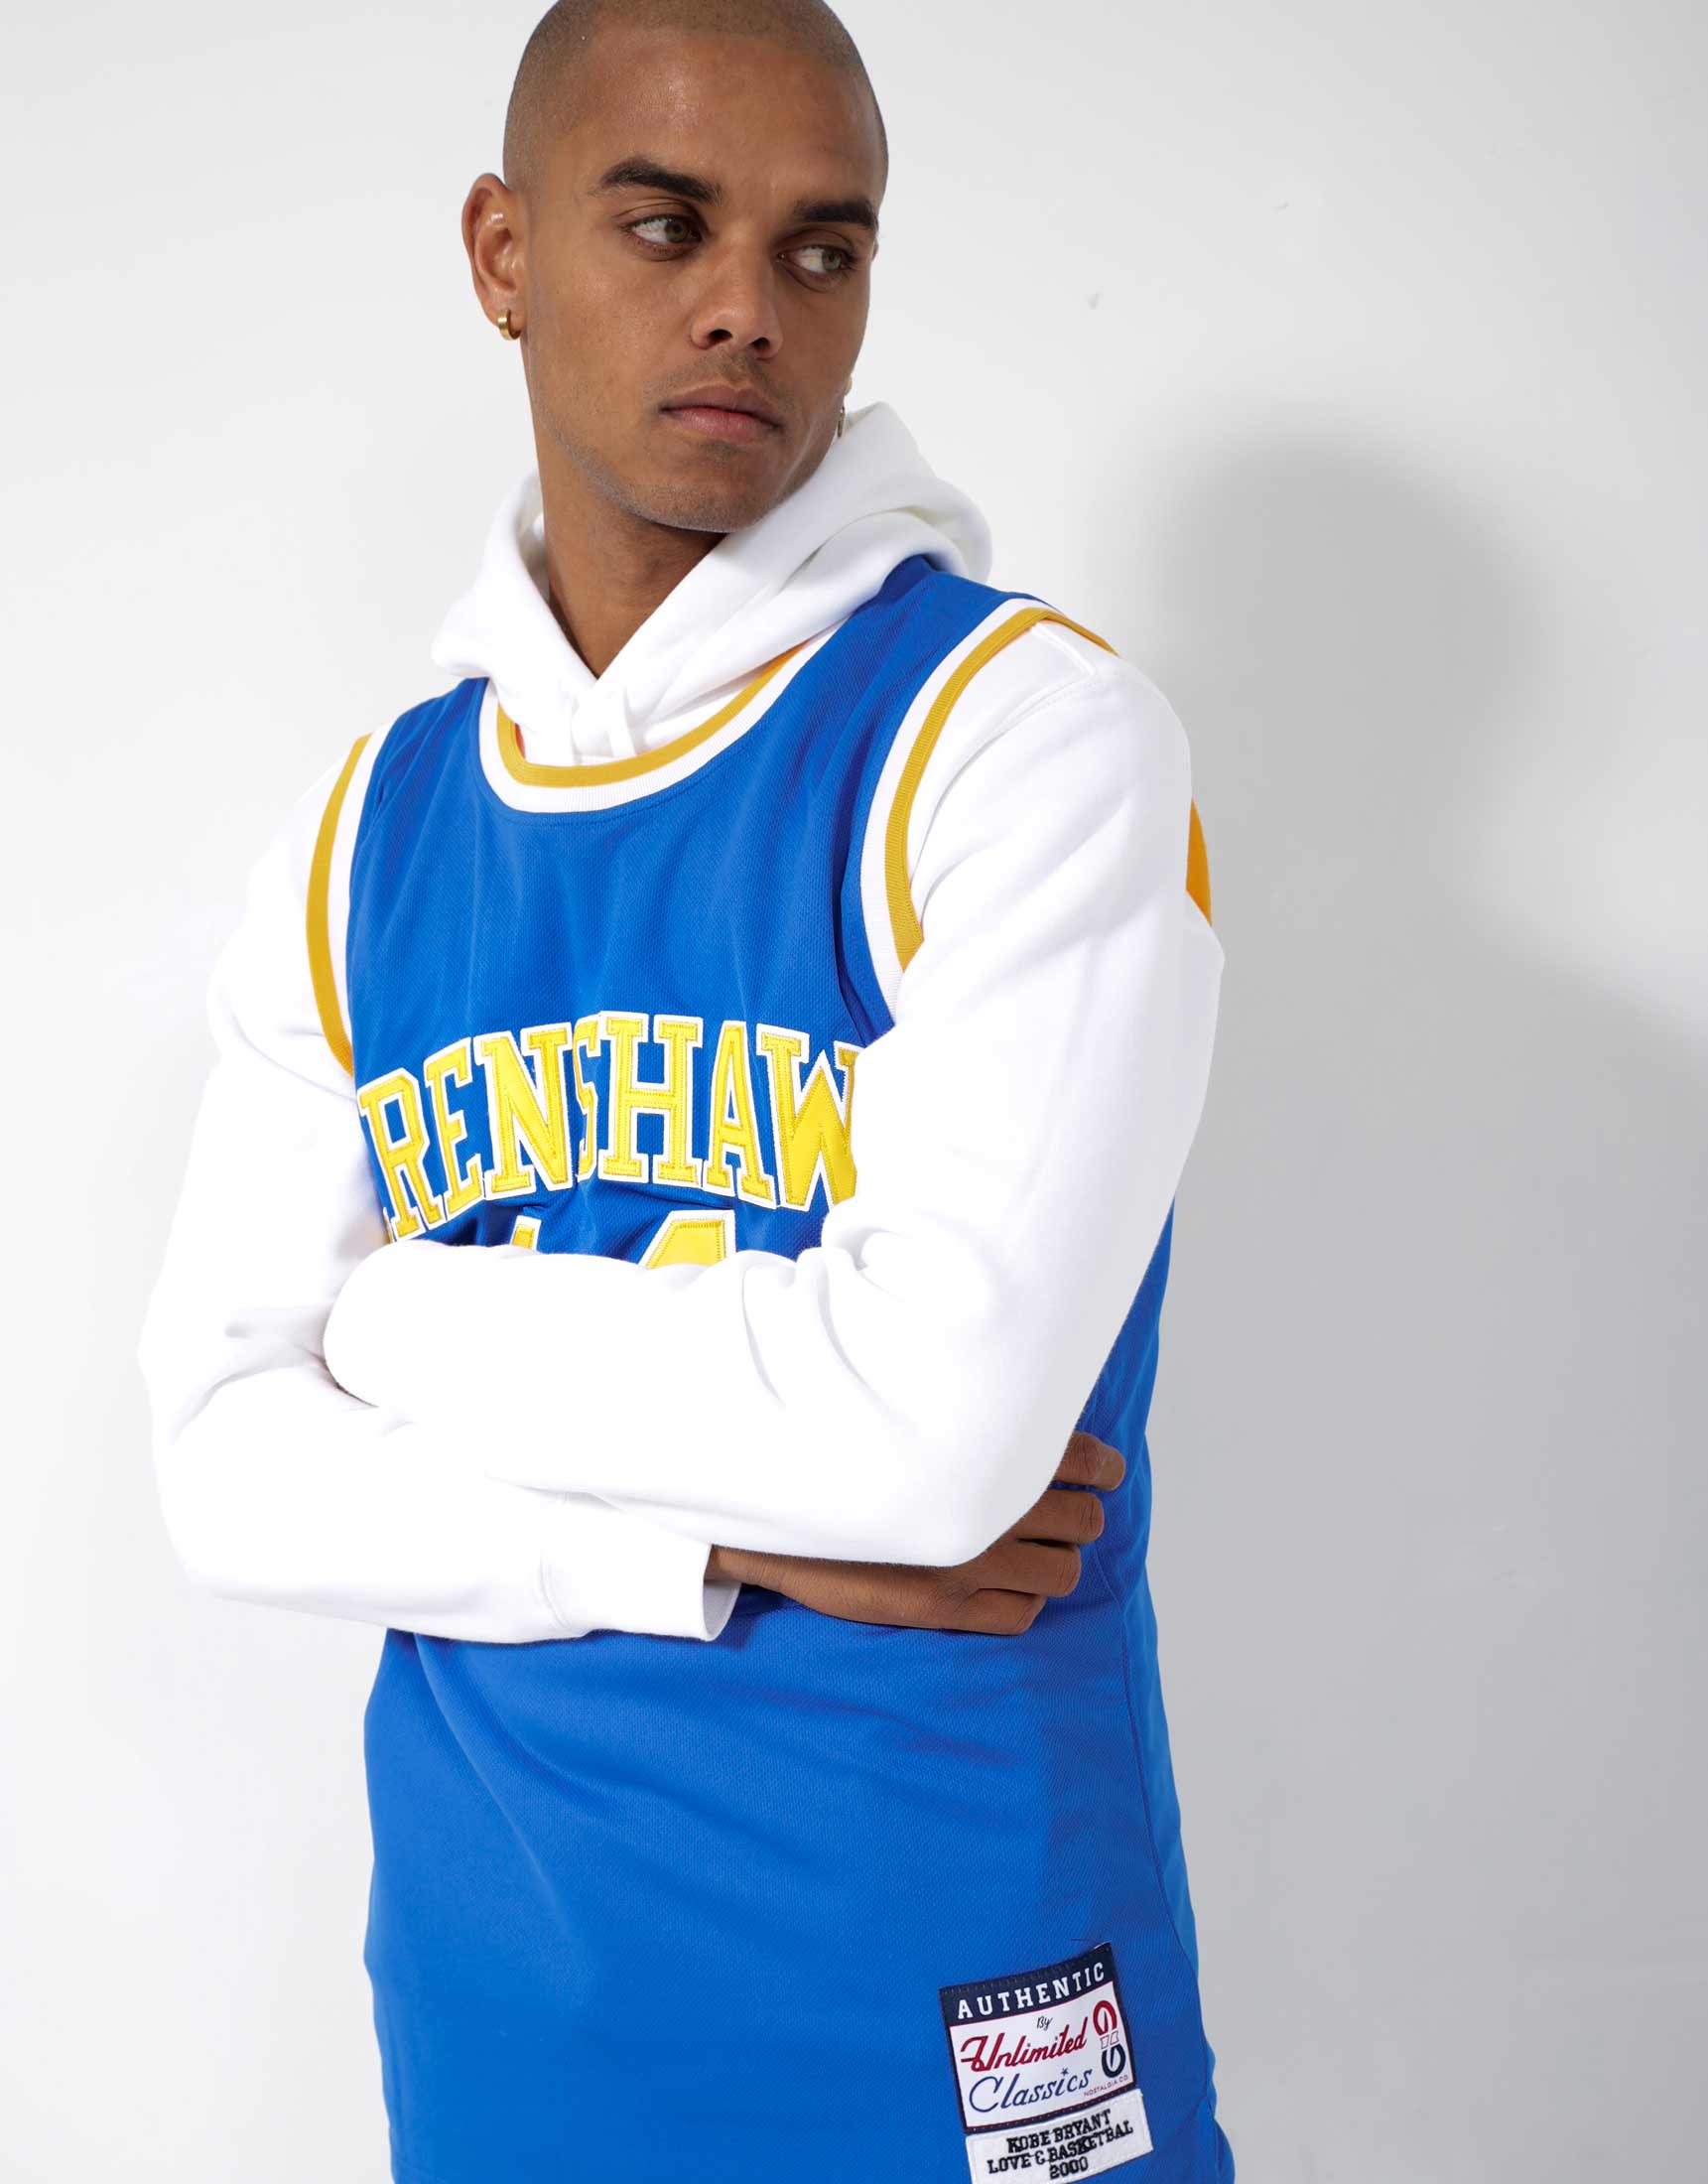 Crenshaw Kobe Bryant #24 Stitched Blue White 2XL Basketball Jersey